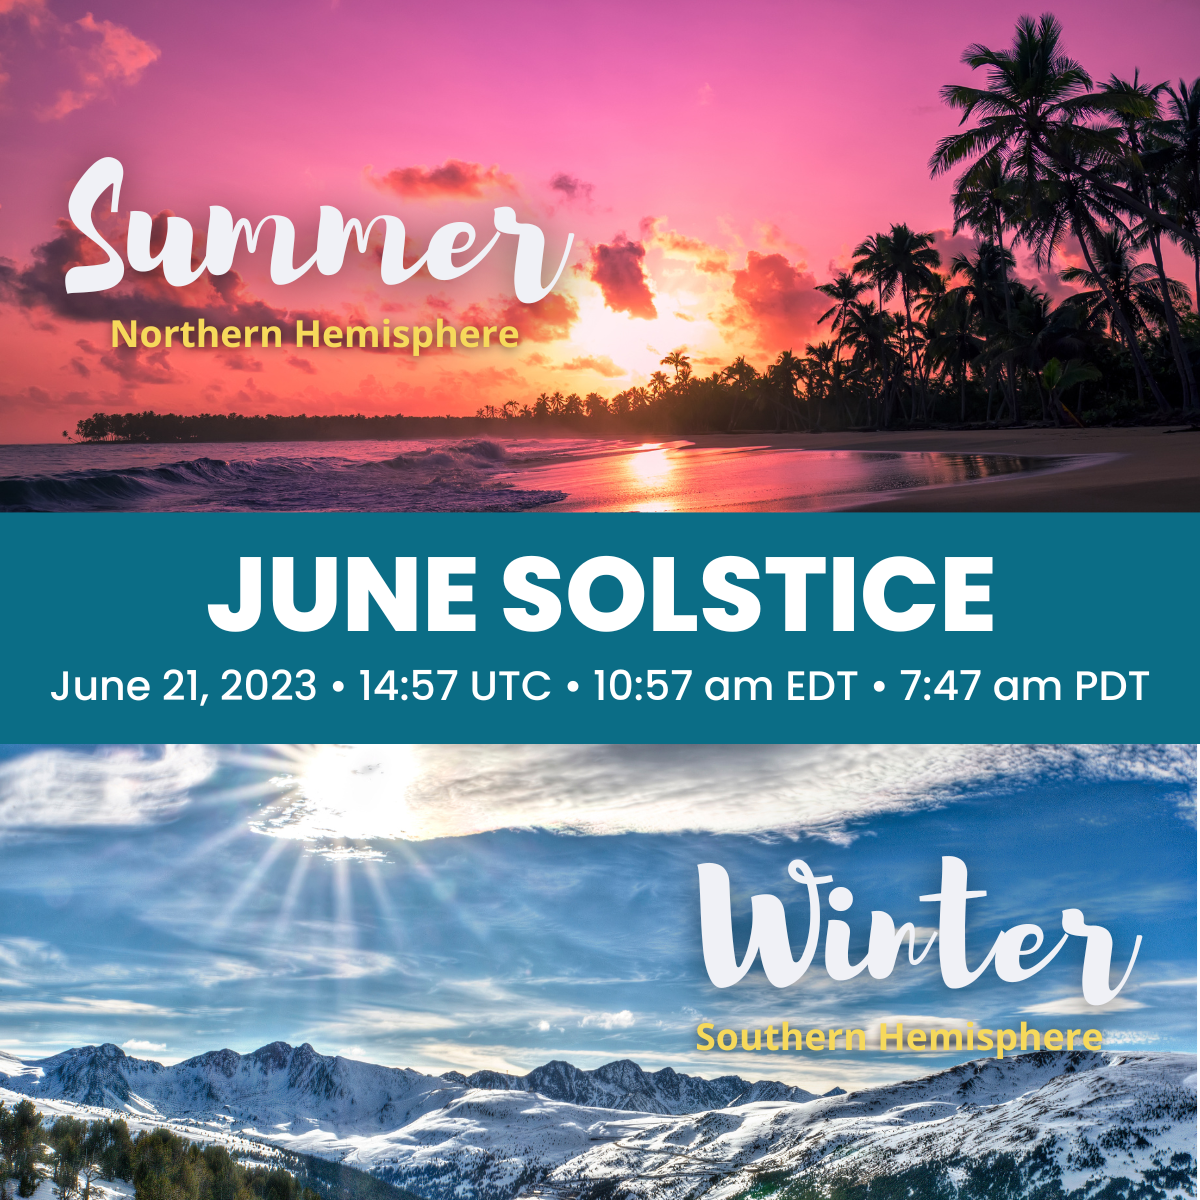 June Solstice - June 21, 2023 • 14:57 UTC • 10:57 am EDT • 7:47 am PDT